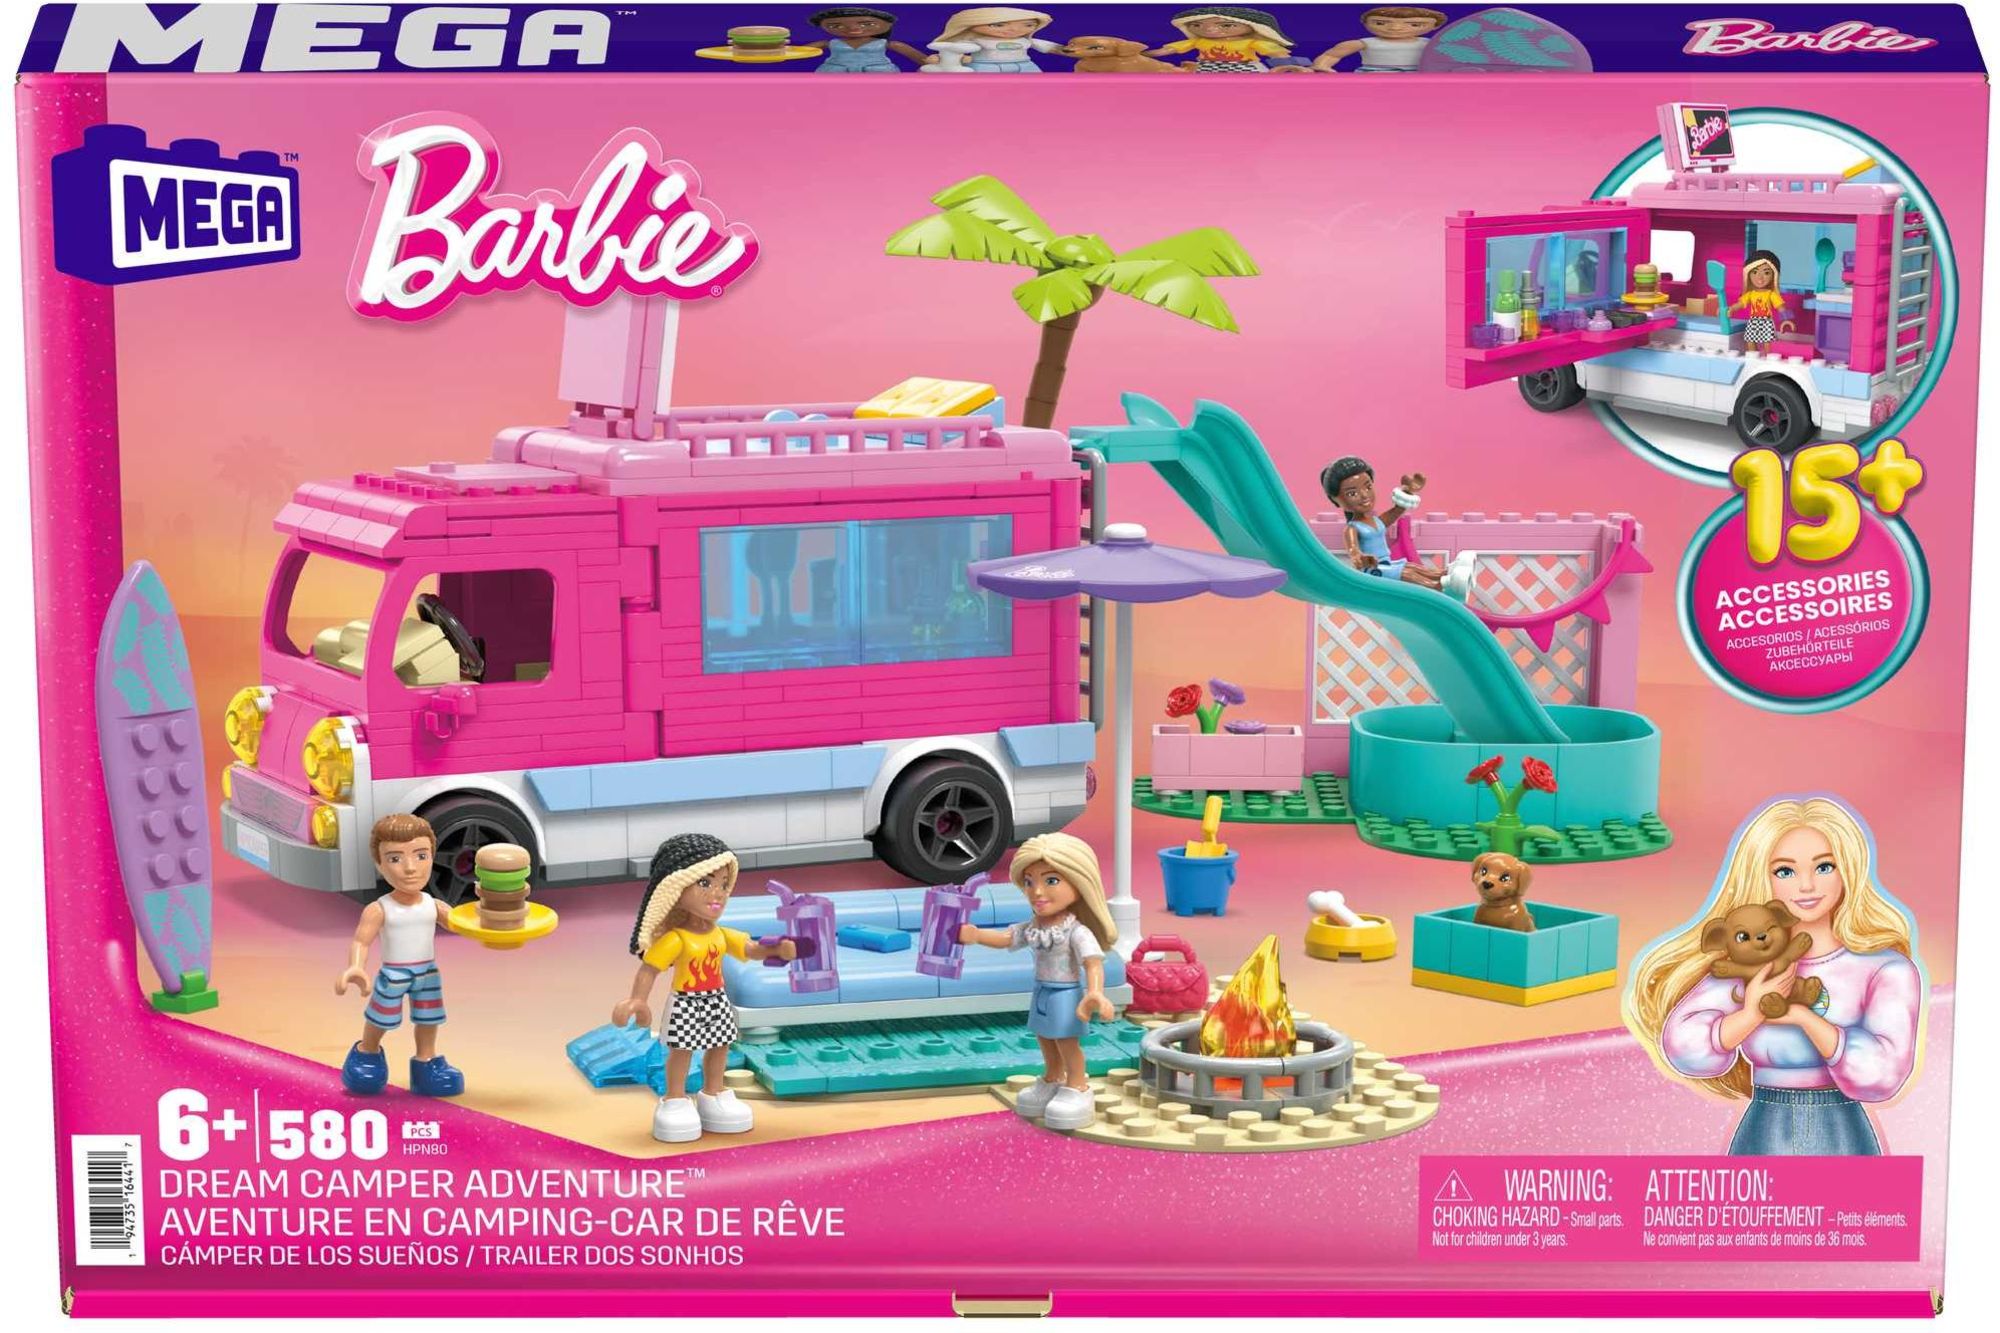 Mega Bloks - Barbie Super Abenteuer-Camper' kaufen - Spielwaren